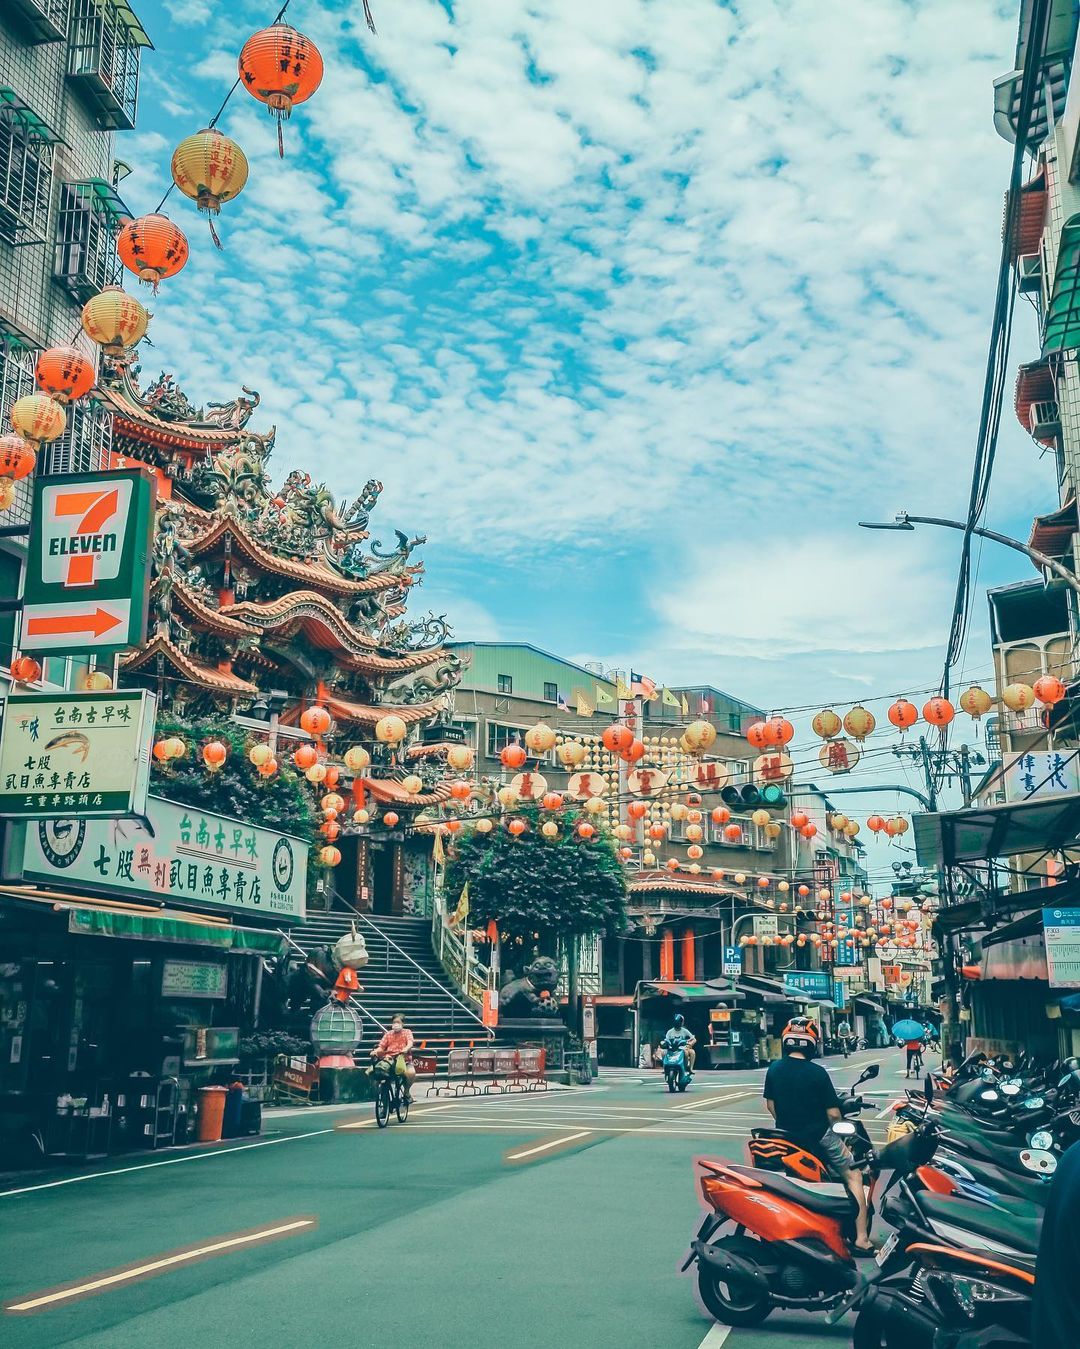 台湾 新北の旅人 公式 このような街の景色は台湾の独特な美学です 一緒に頑張って早く通常の生活に戻りますように コロナ禍を乗り越えましょう 絶景 台湾風景 Photo By Ig Endao Life T Co Dgt3rd19se Twitter